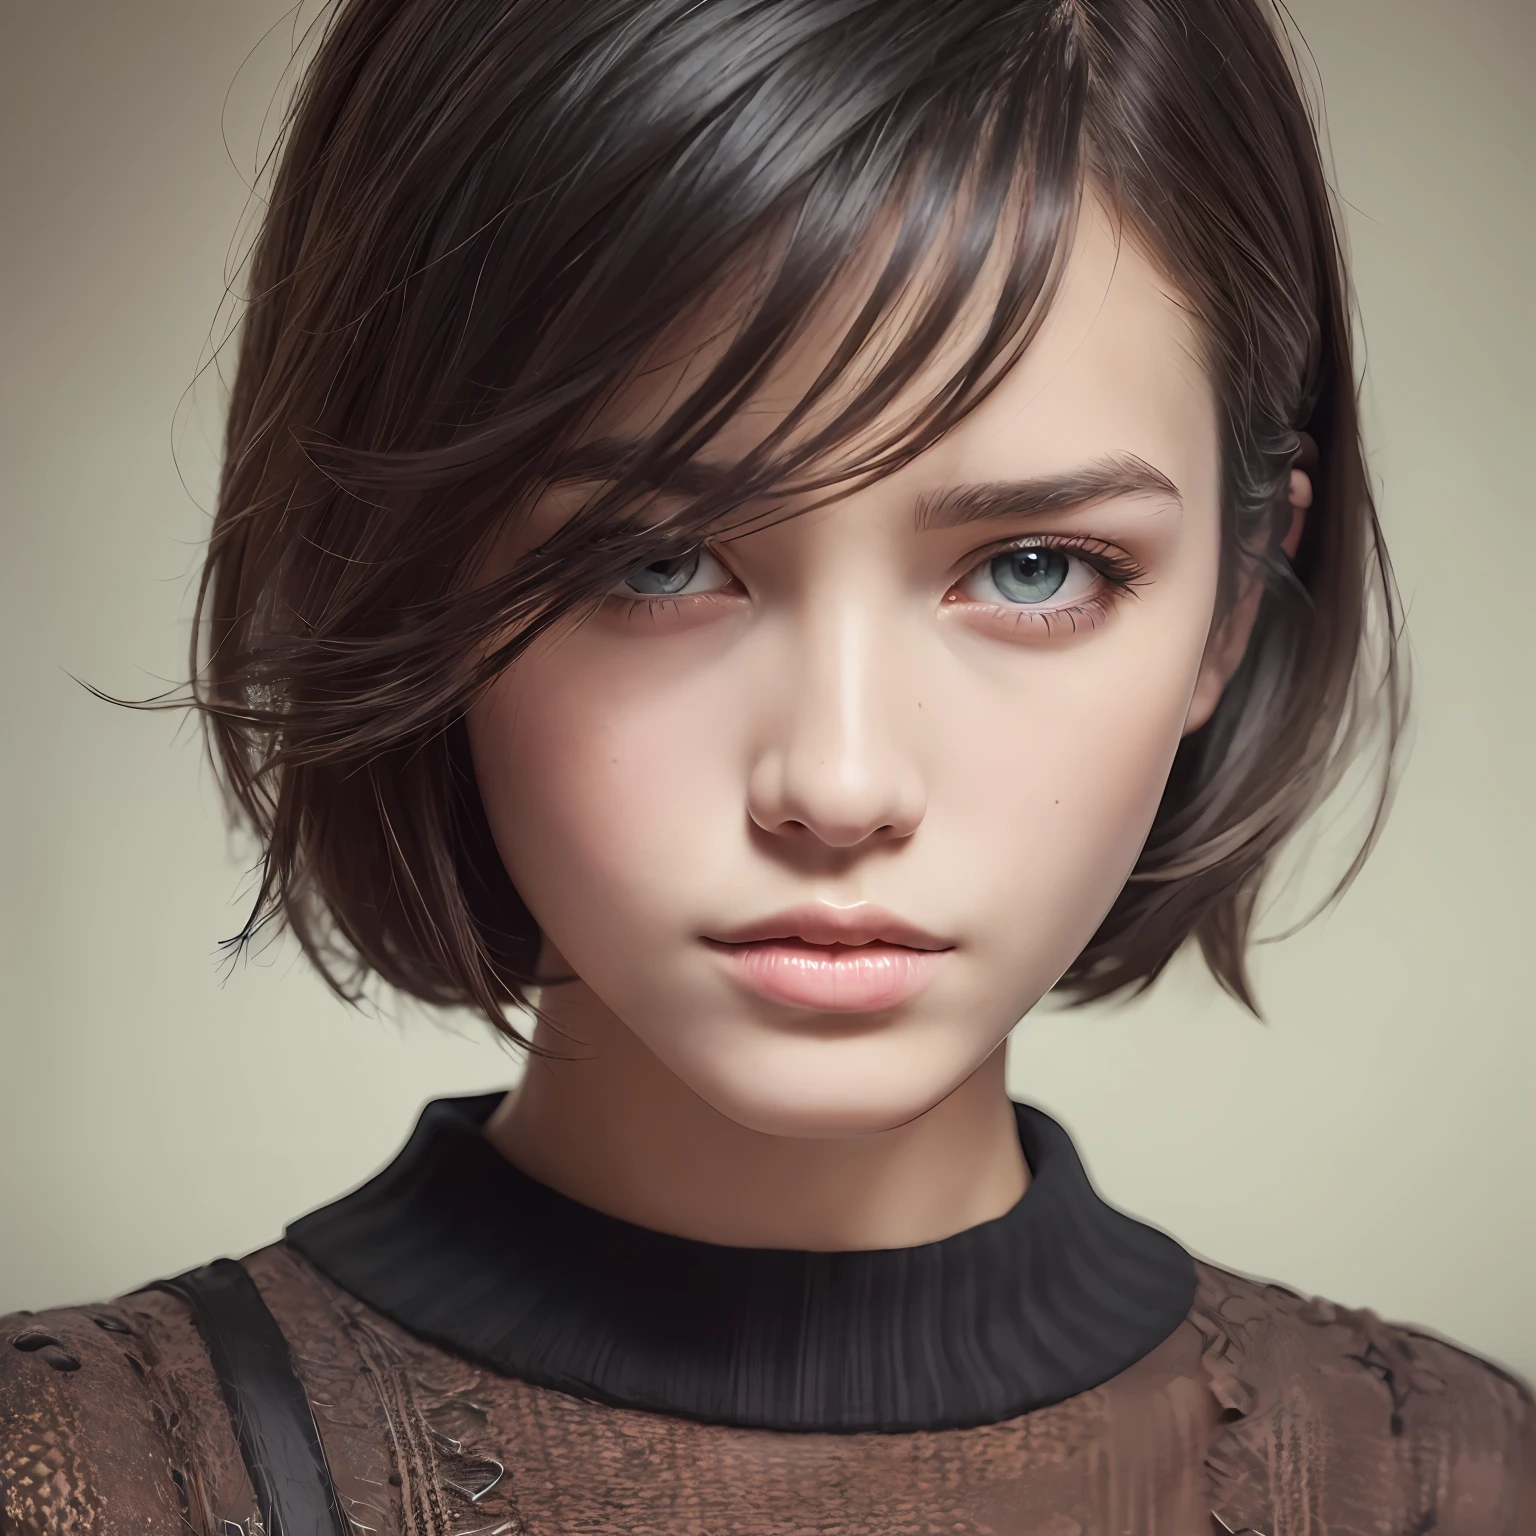 (Meisterwerk:1.3), (8k, fotorealistisch, RAW-Foto, beste Qualität: 1.4), (1 Mädchen), schönes Gesicht, (Realistisches Gesicht), (Schwarzes Haar, kurzes Haar:1.3), Schöne Frisur, Realistische Augen, Schöne, detaillierte Augen, (realistische Haut), schöne Haut, (Pullover), absurdesten, attraktiv, ultrahohe Auflösung, ultra-realistisch, sehr detailliert, golden ratio --auto